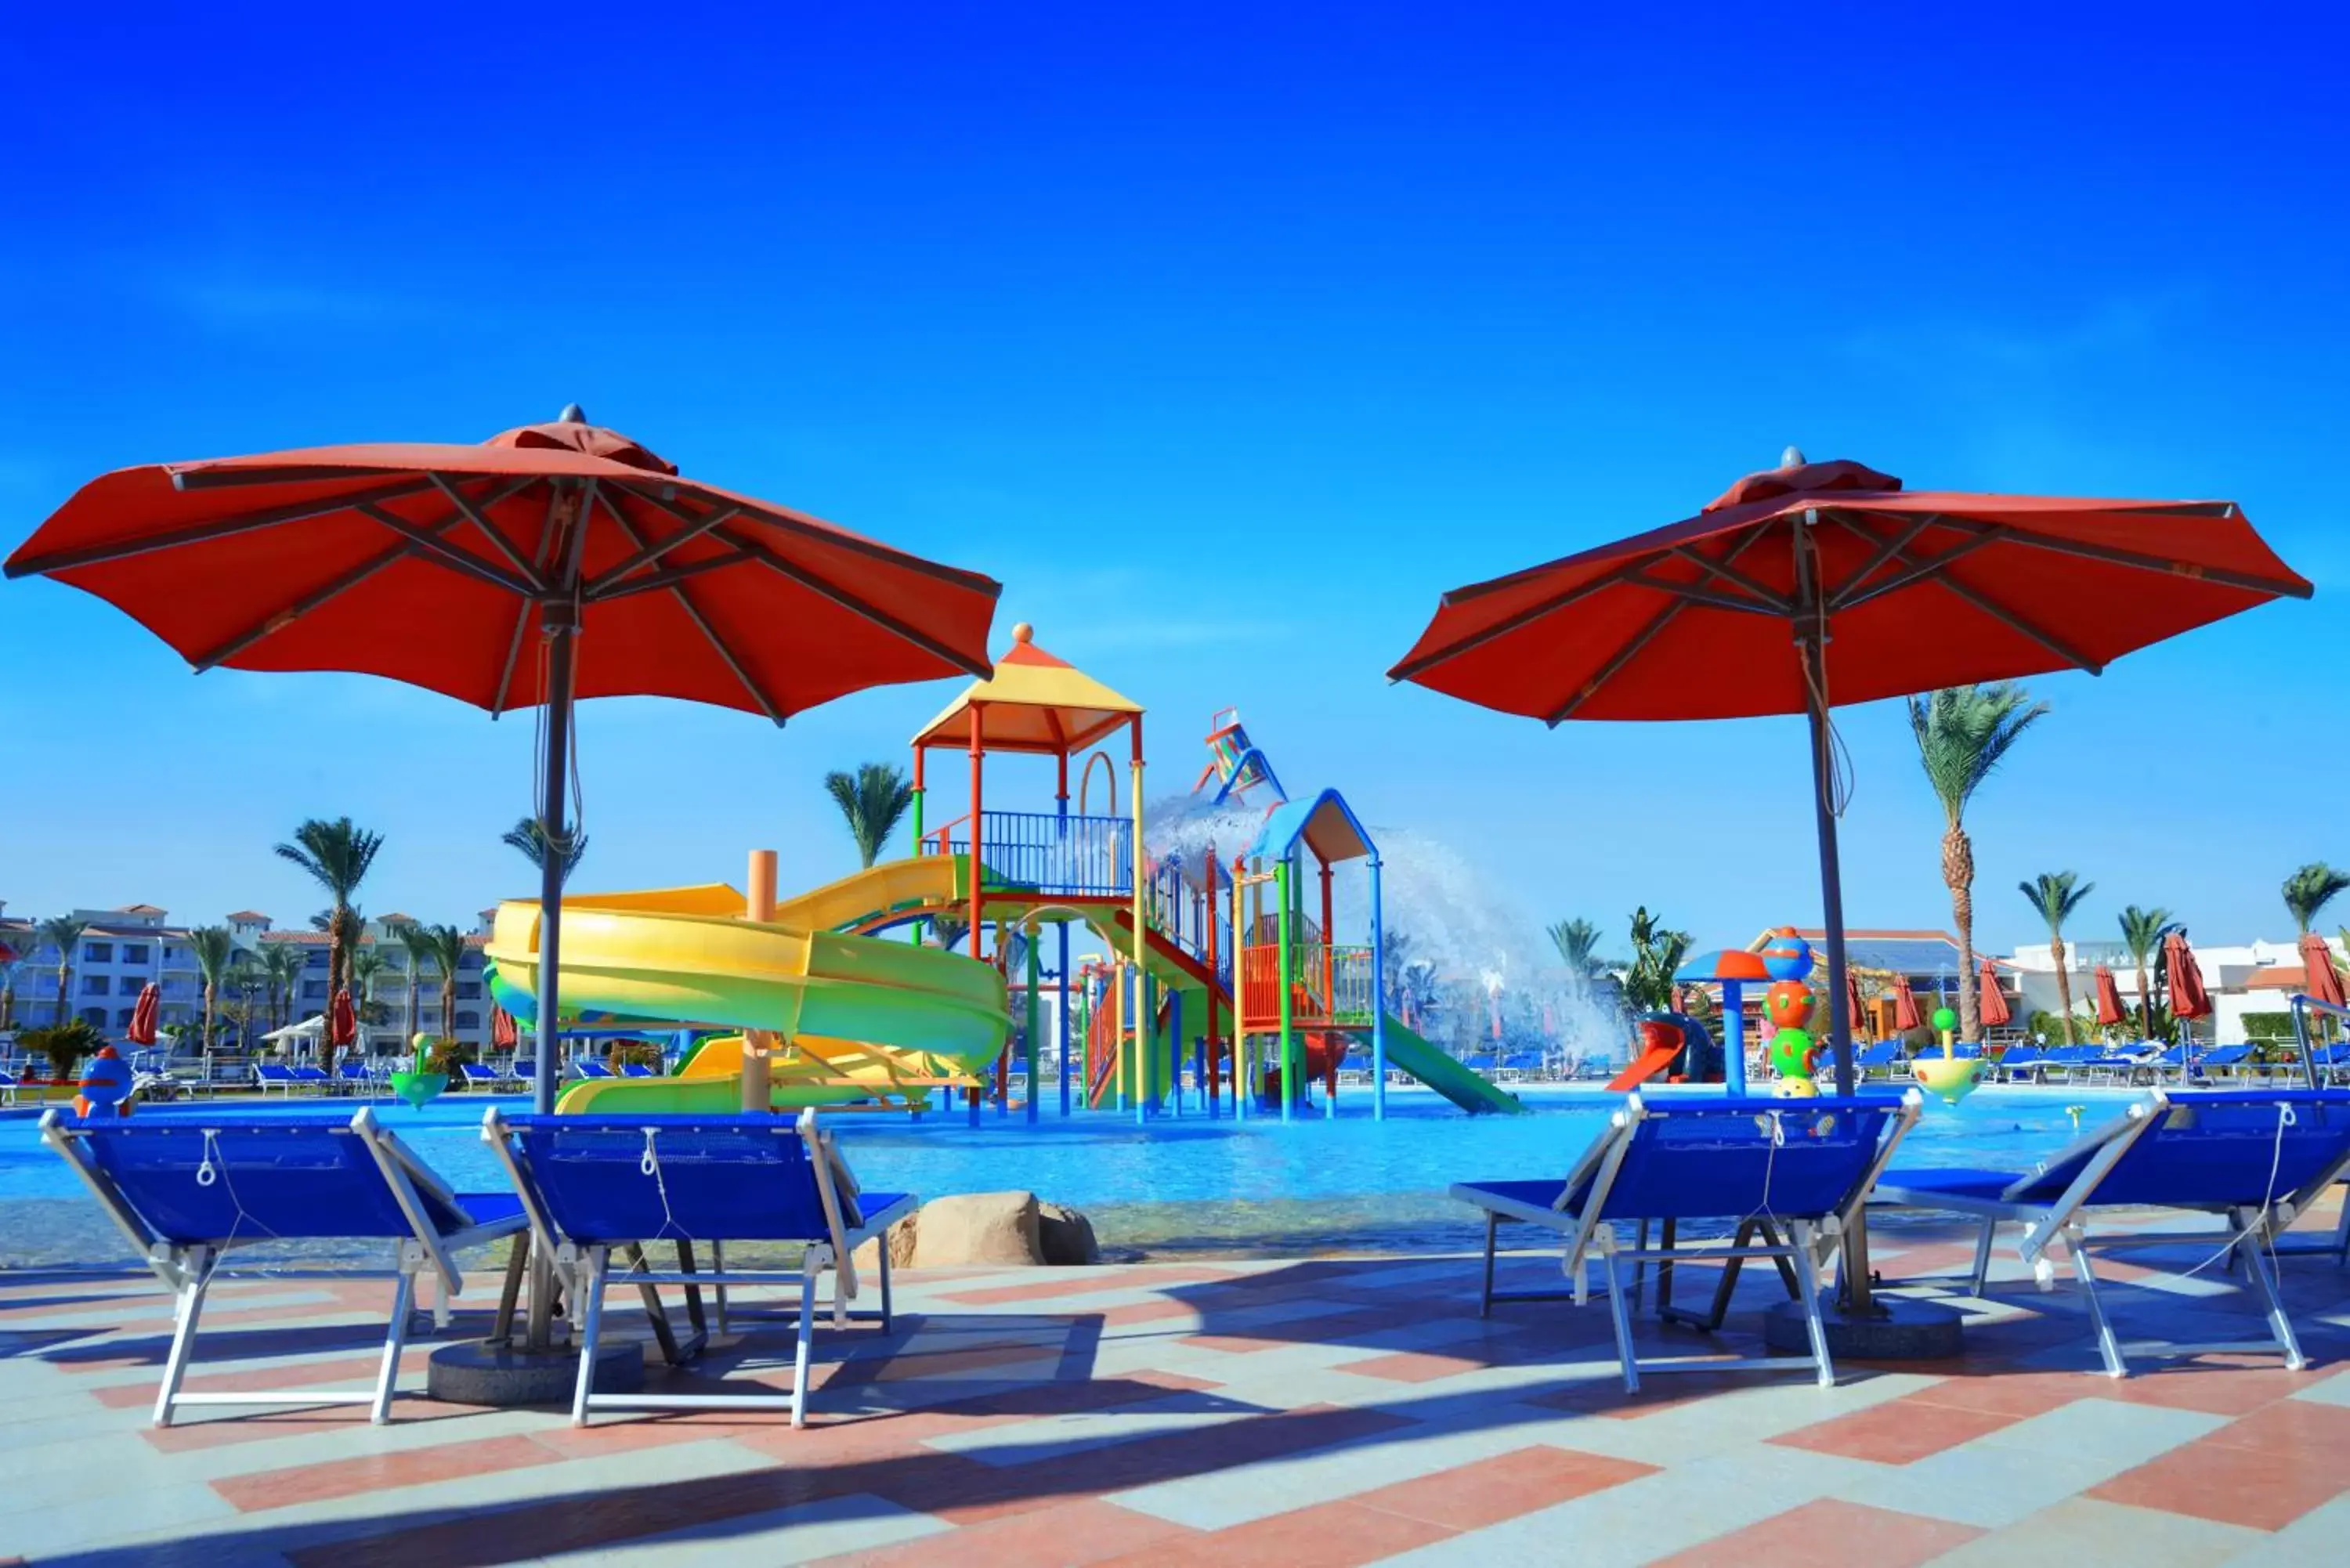 Aqua park, Swimming Pool in Pickalbatros Dana Beach Resort - Hurghada